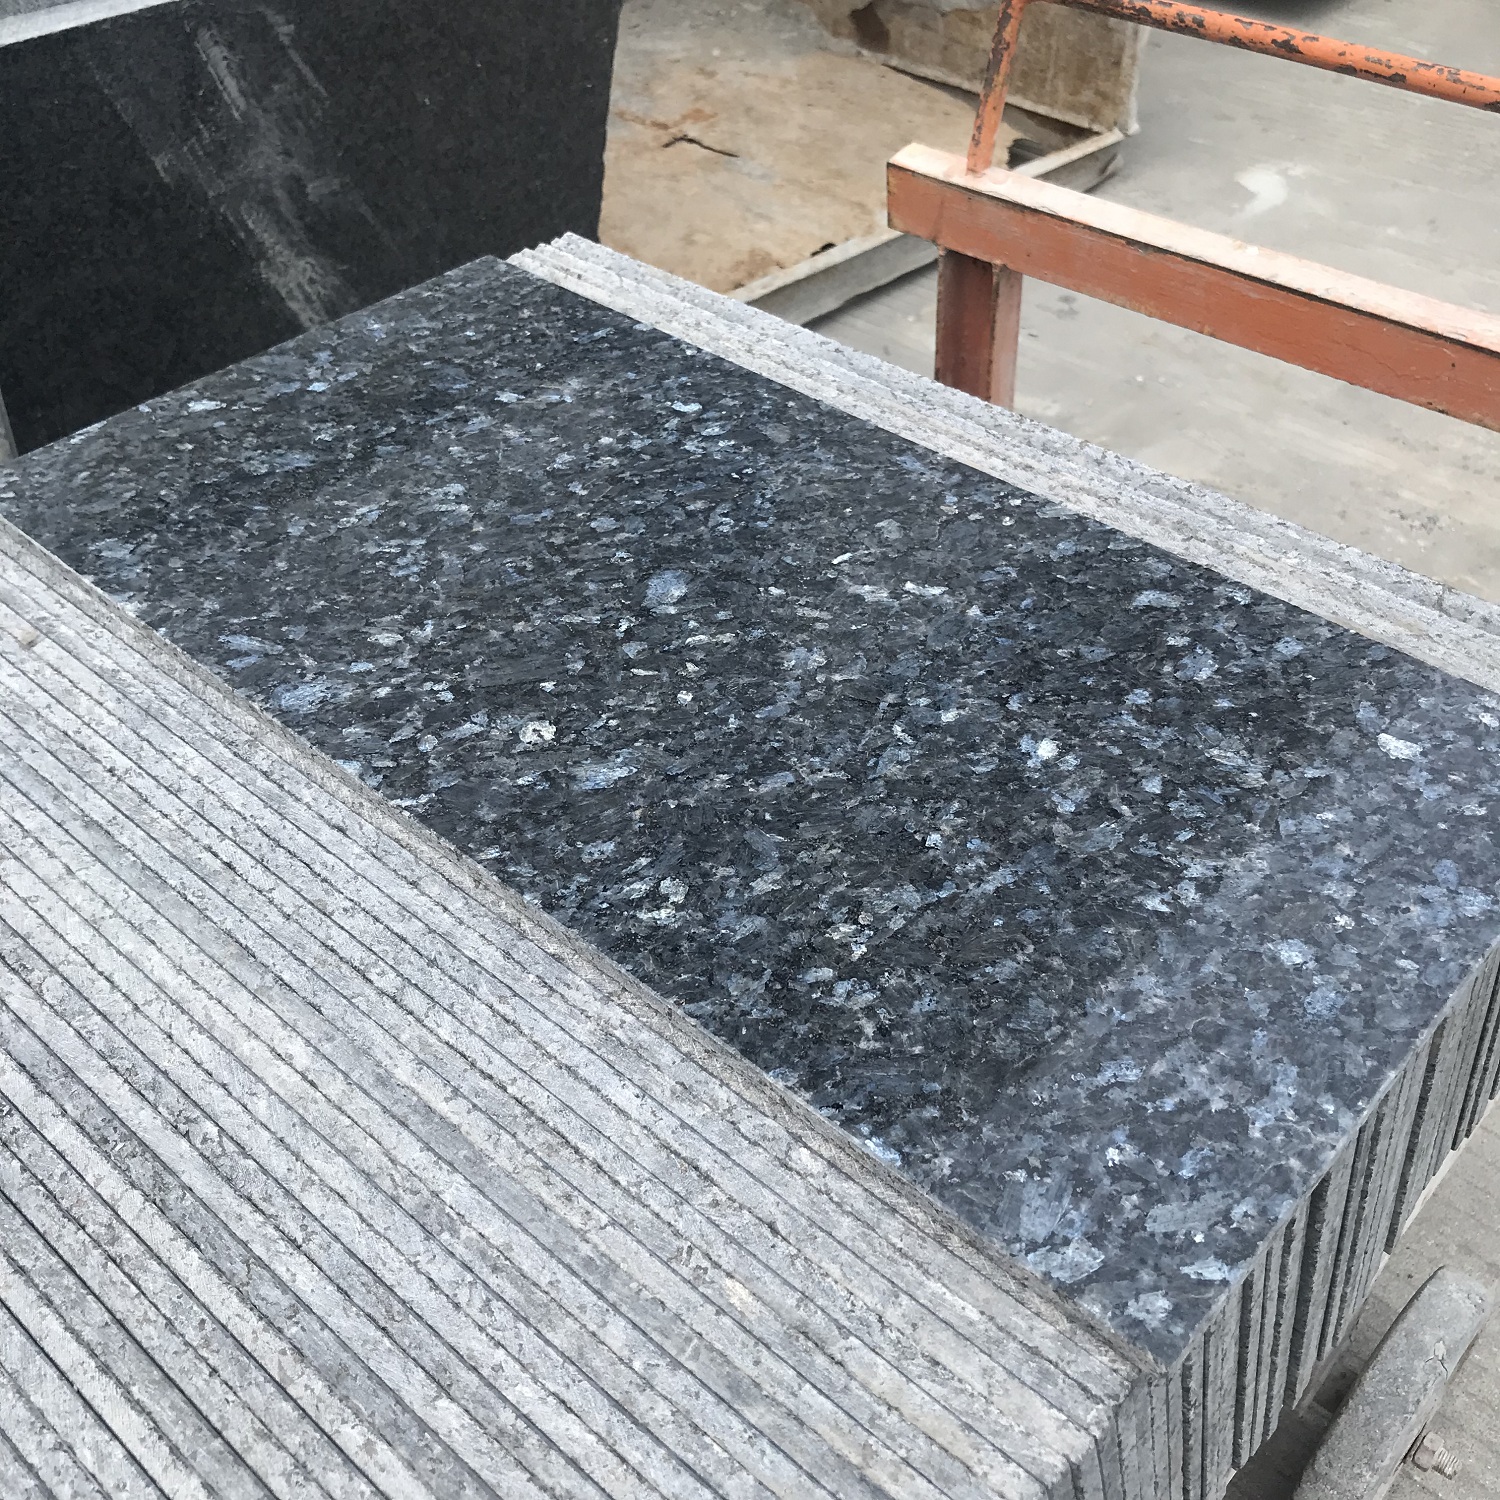 Polished blue pearl granite tile